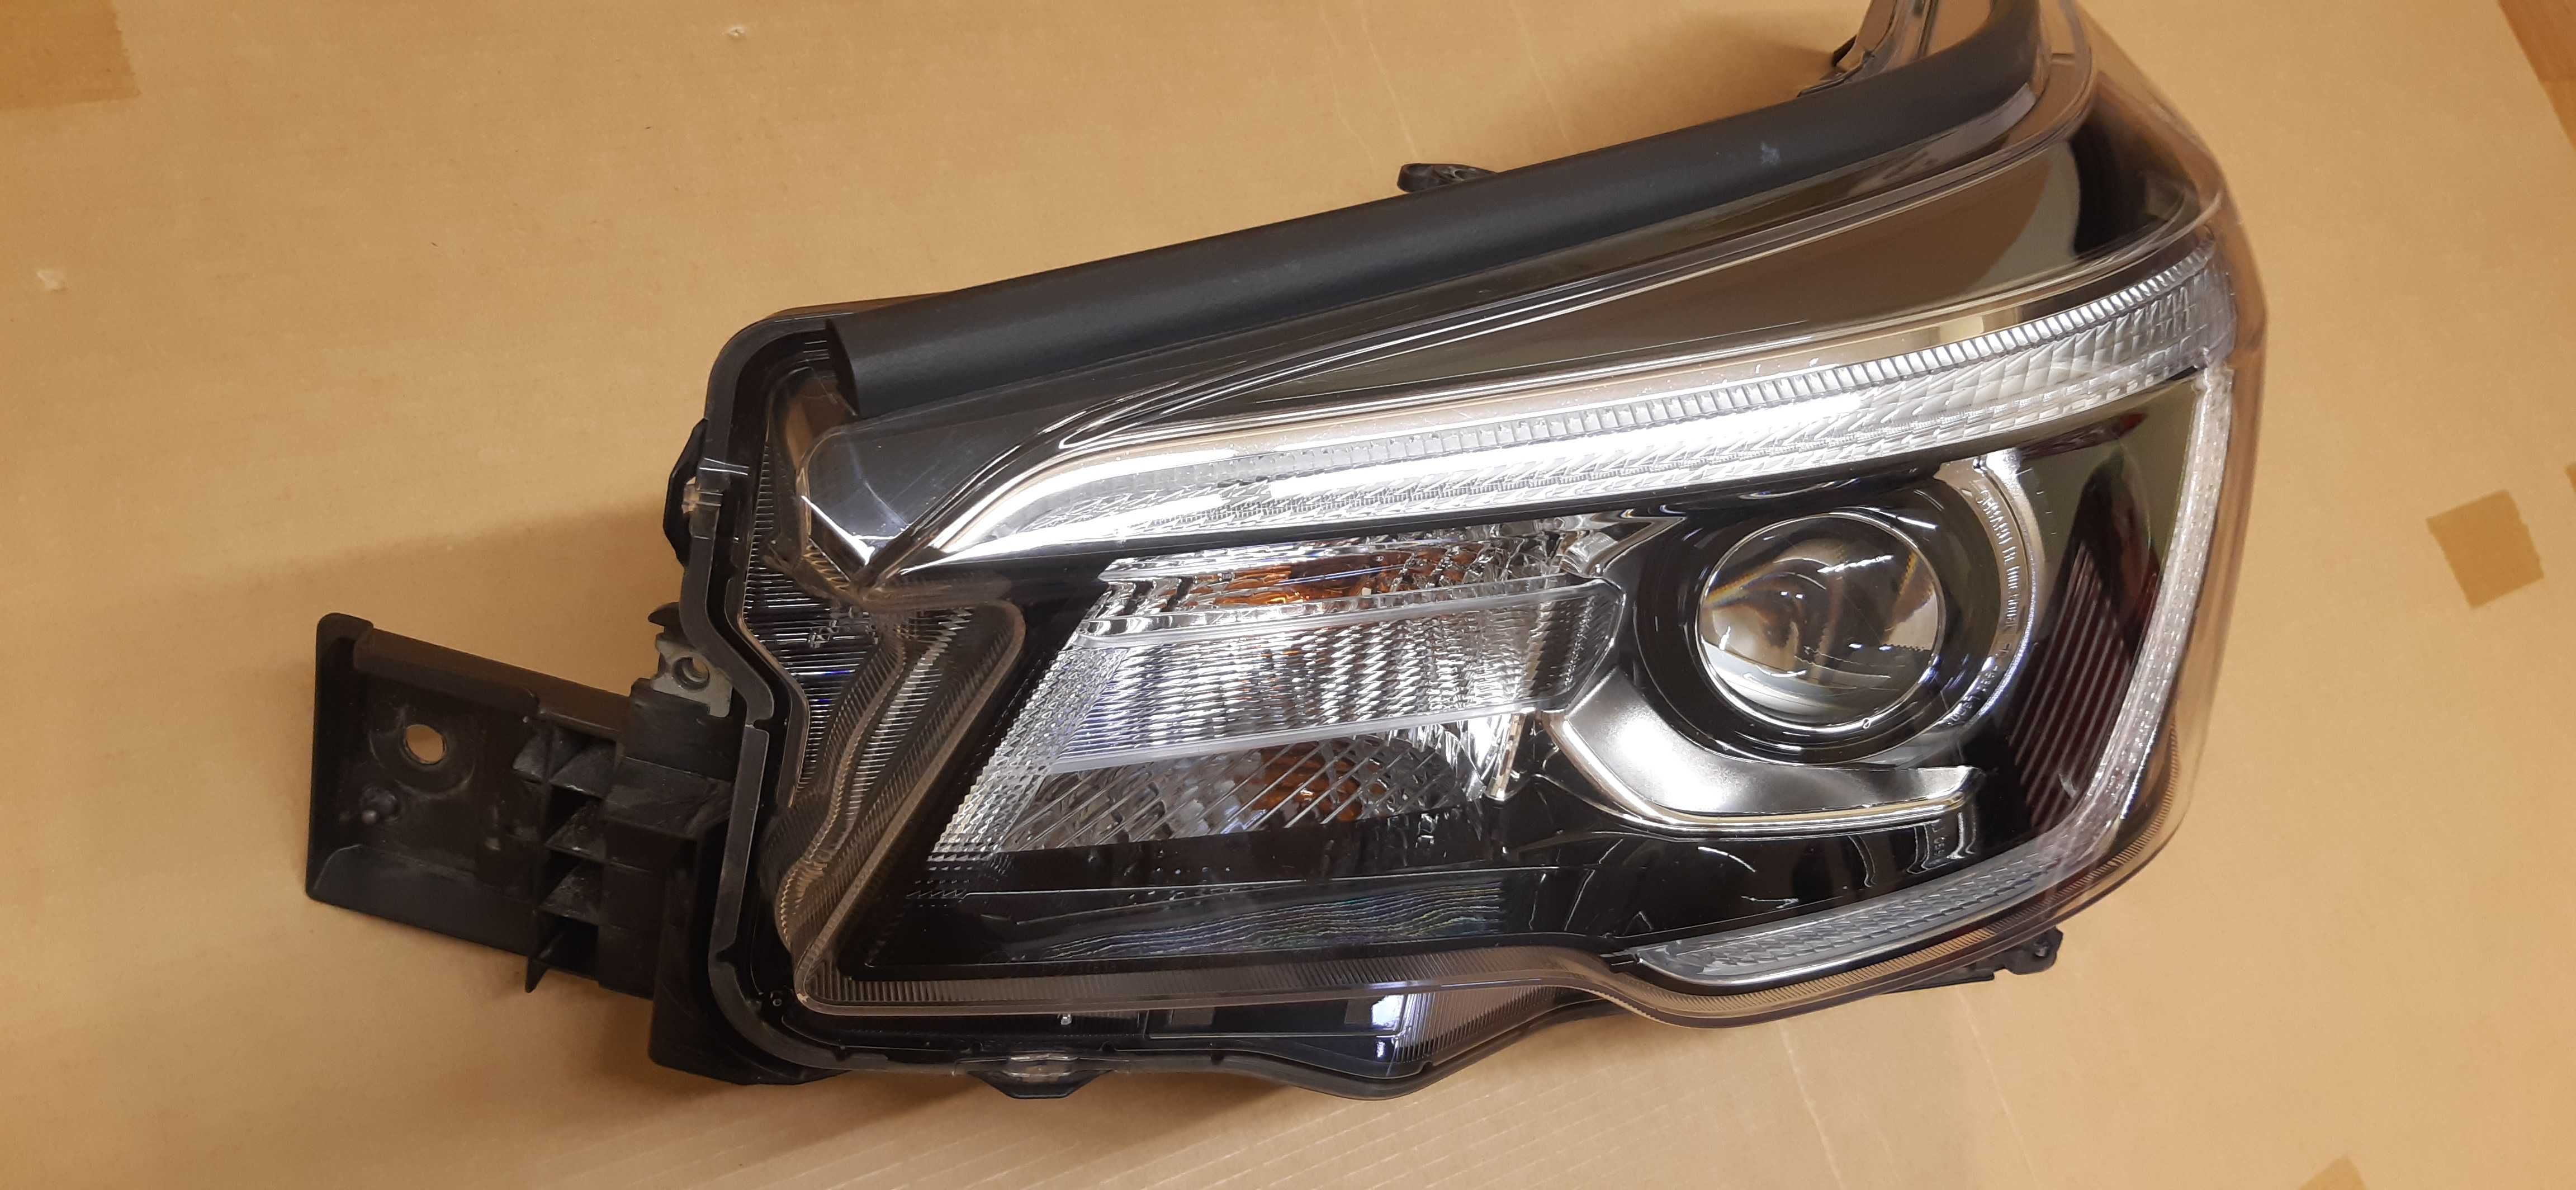 Subaru Forester SK 2019-21 reflektor lampa LED oryginał lewy przód  EU